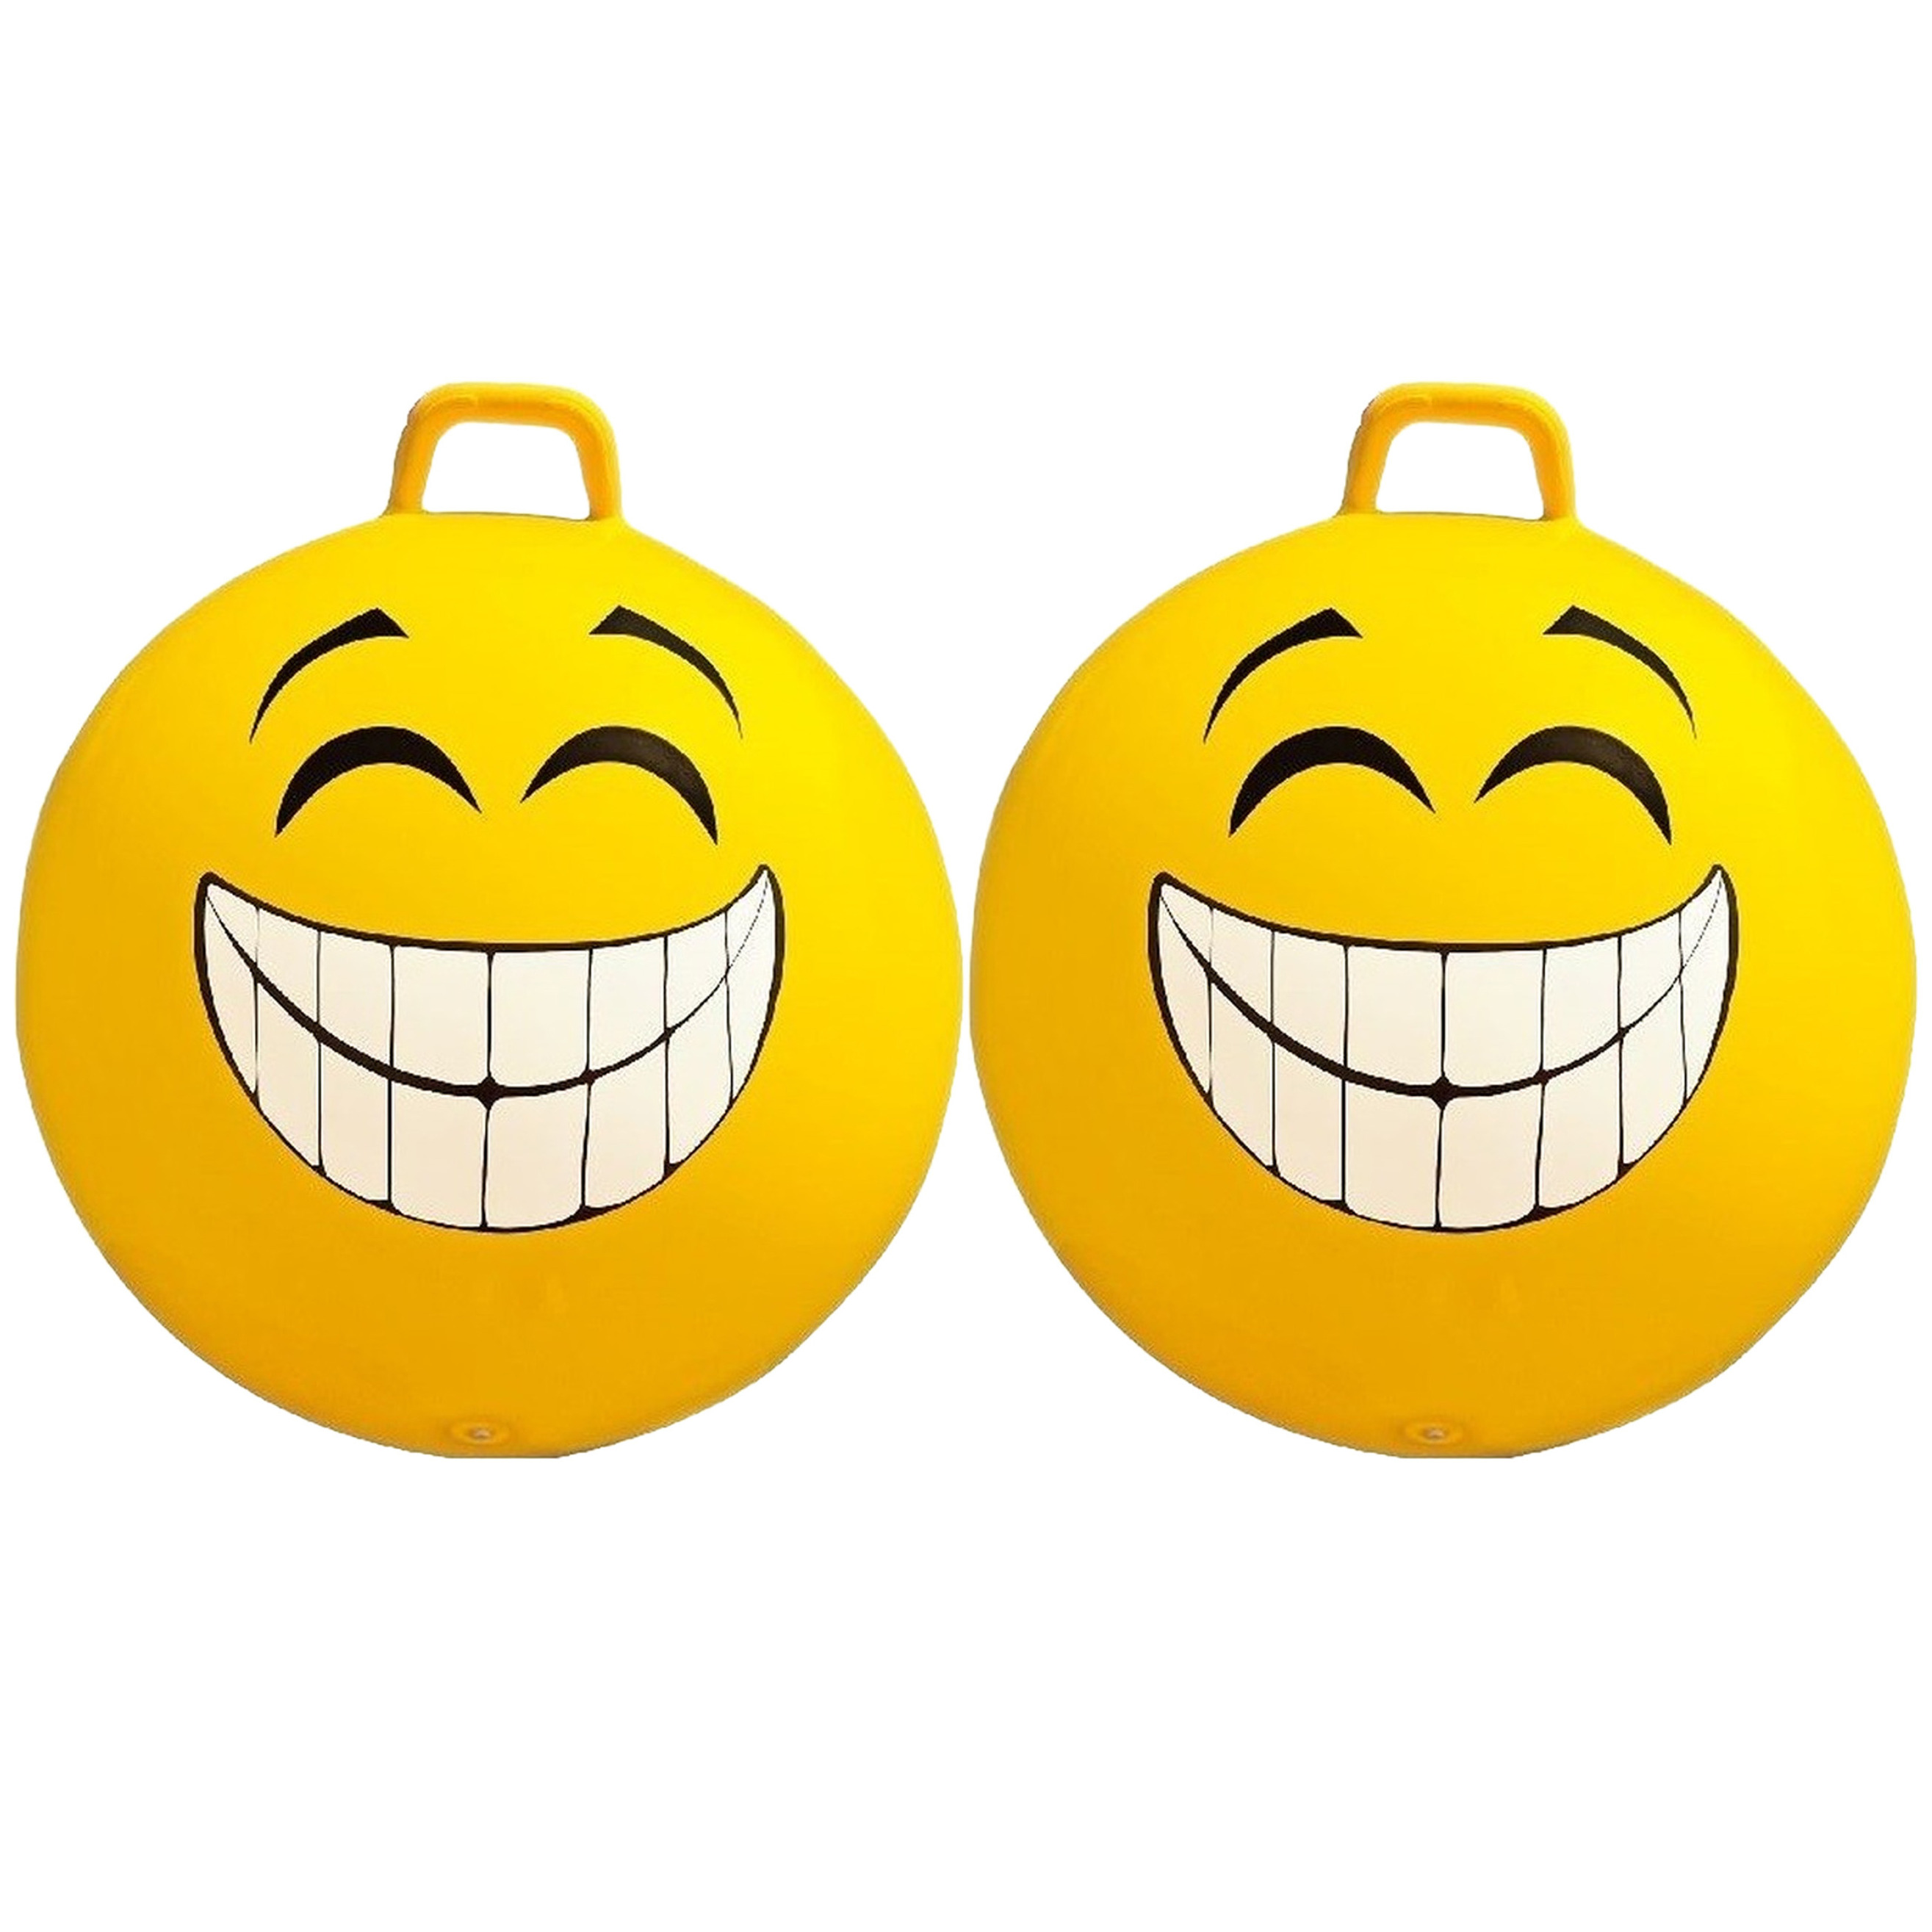 2x stuks gele skippybal smiley voor kinderen 65 cm